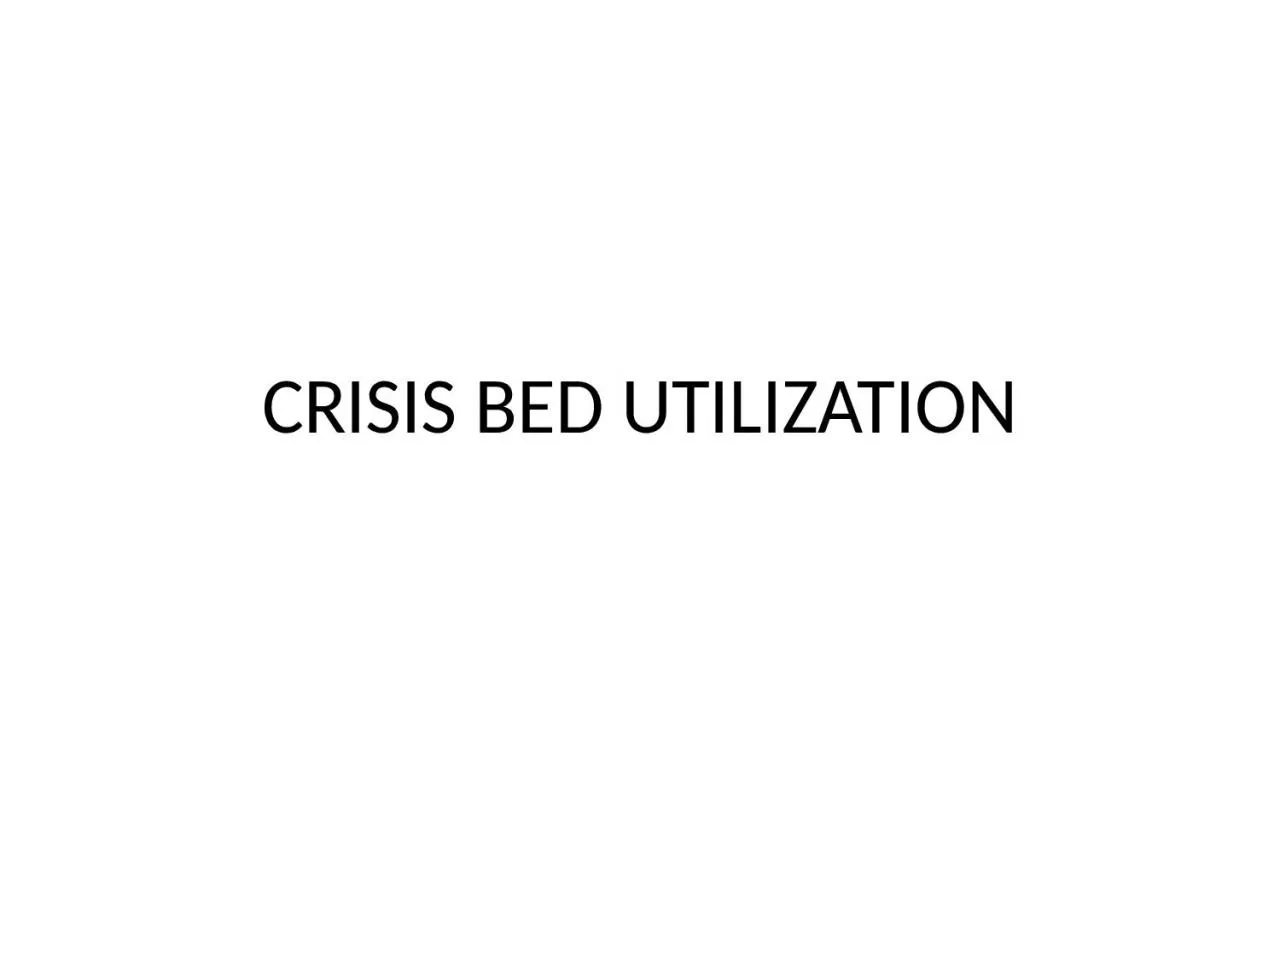 CRISIS BED UTILIZATION Crisis Bed Utilization